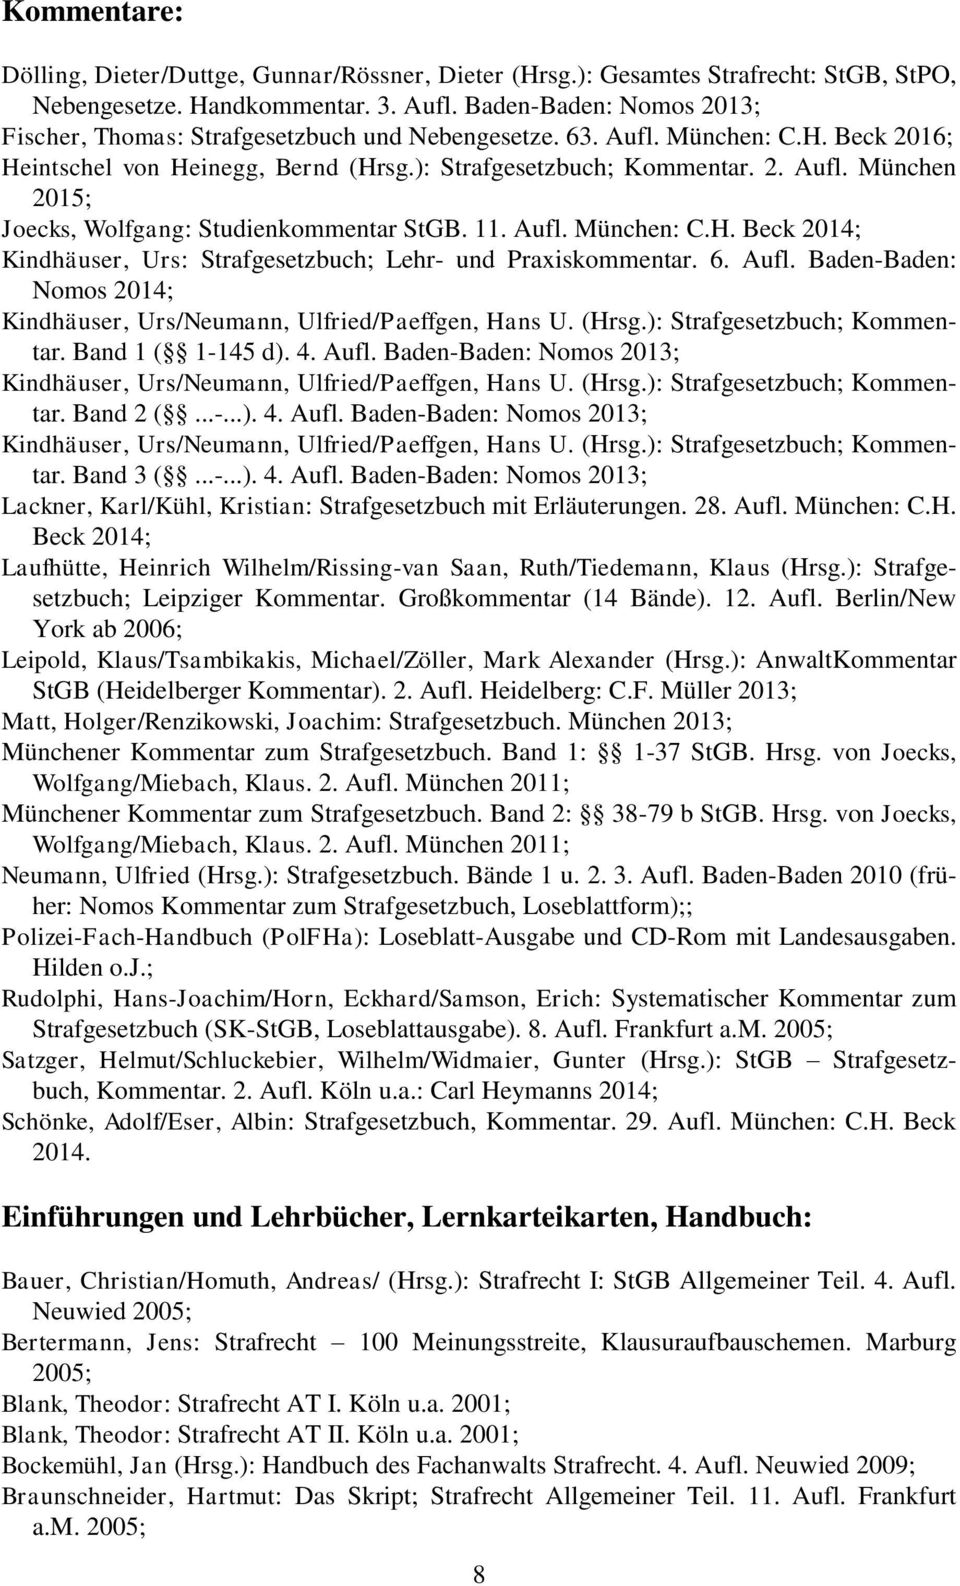 11. Aufl. München: C.H. Beck 2014; Kindhäuser, Urs: Strafgesetzbuch; Lehr- und Praxiskommentar. 6. Aufl. Baden-Baden: Nomos 2014; Kindhäuser, Urs/Neumann, Ulfried/Paeffgen, Hans U. (Hrsg.